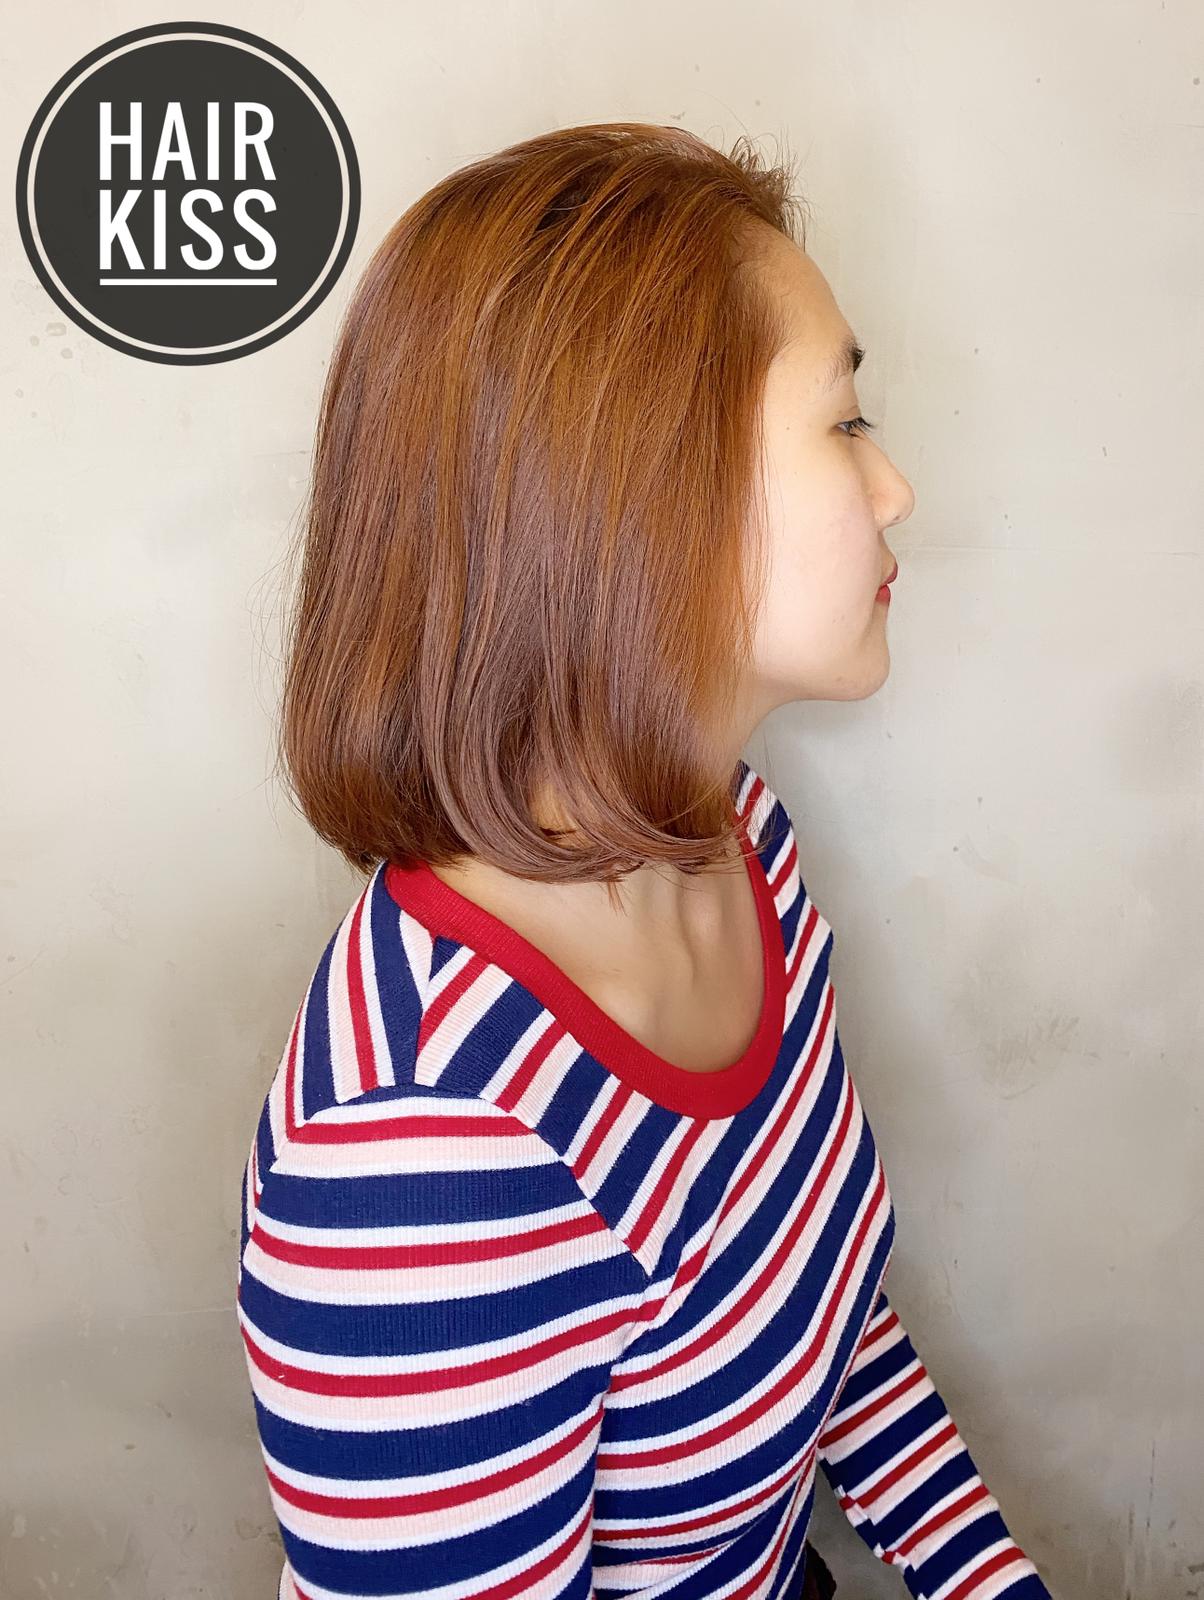 Hair Kiss之髮型作品: Hair kiss ❤️